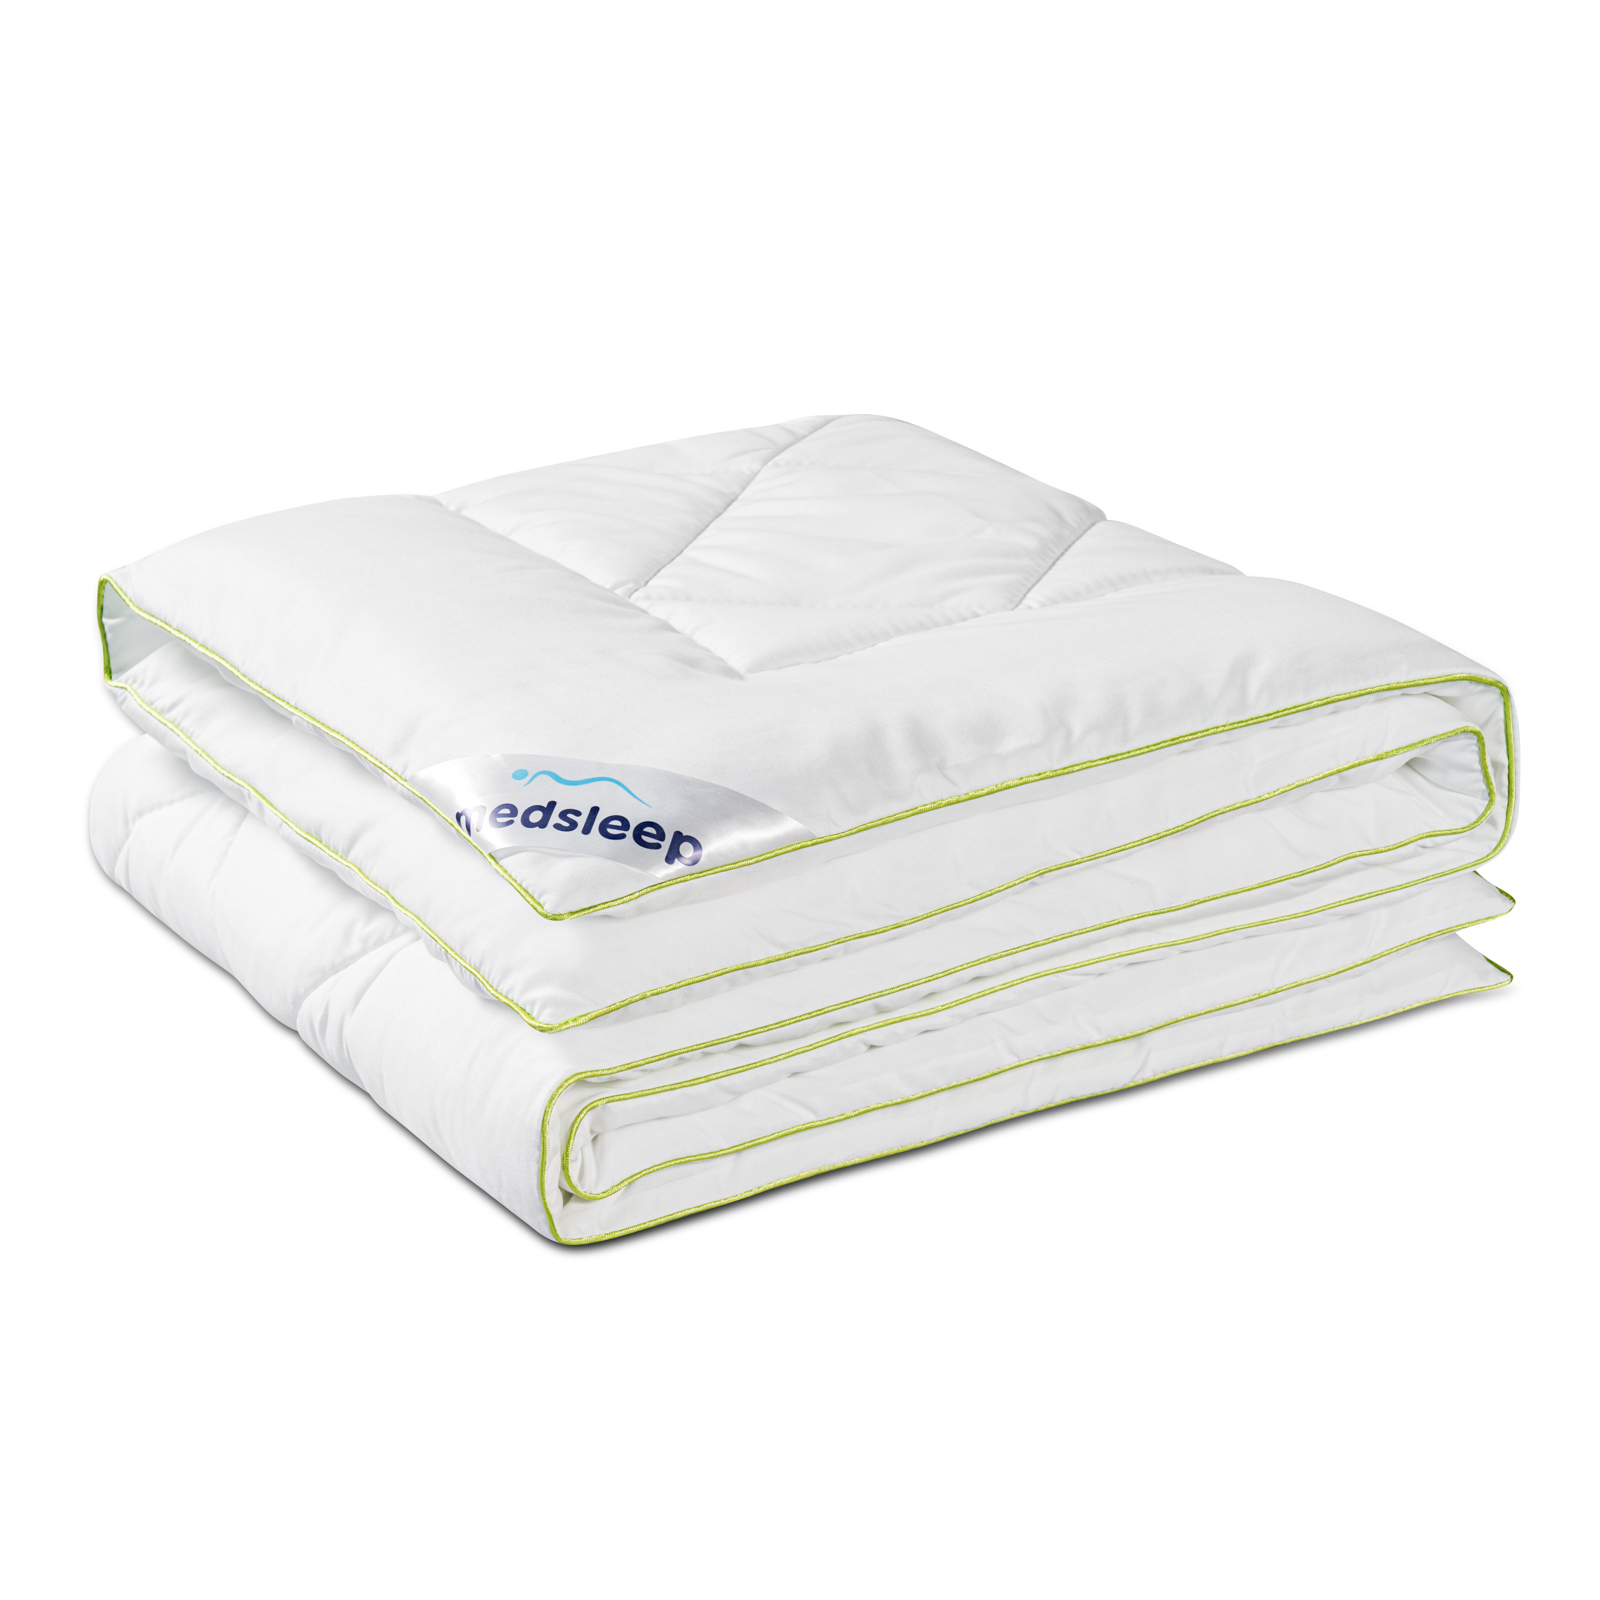 Одеяло Medsleep Dao белое 110х140 см одеяло зимнее medsleep swan princess белое 200х210 см